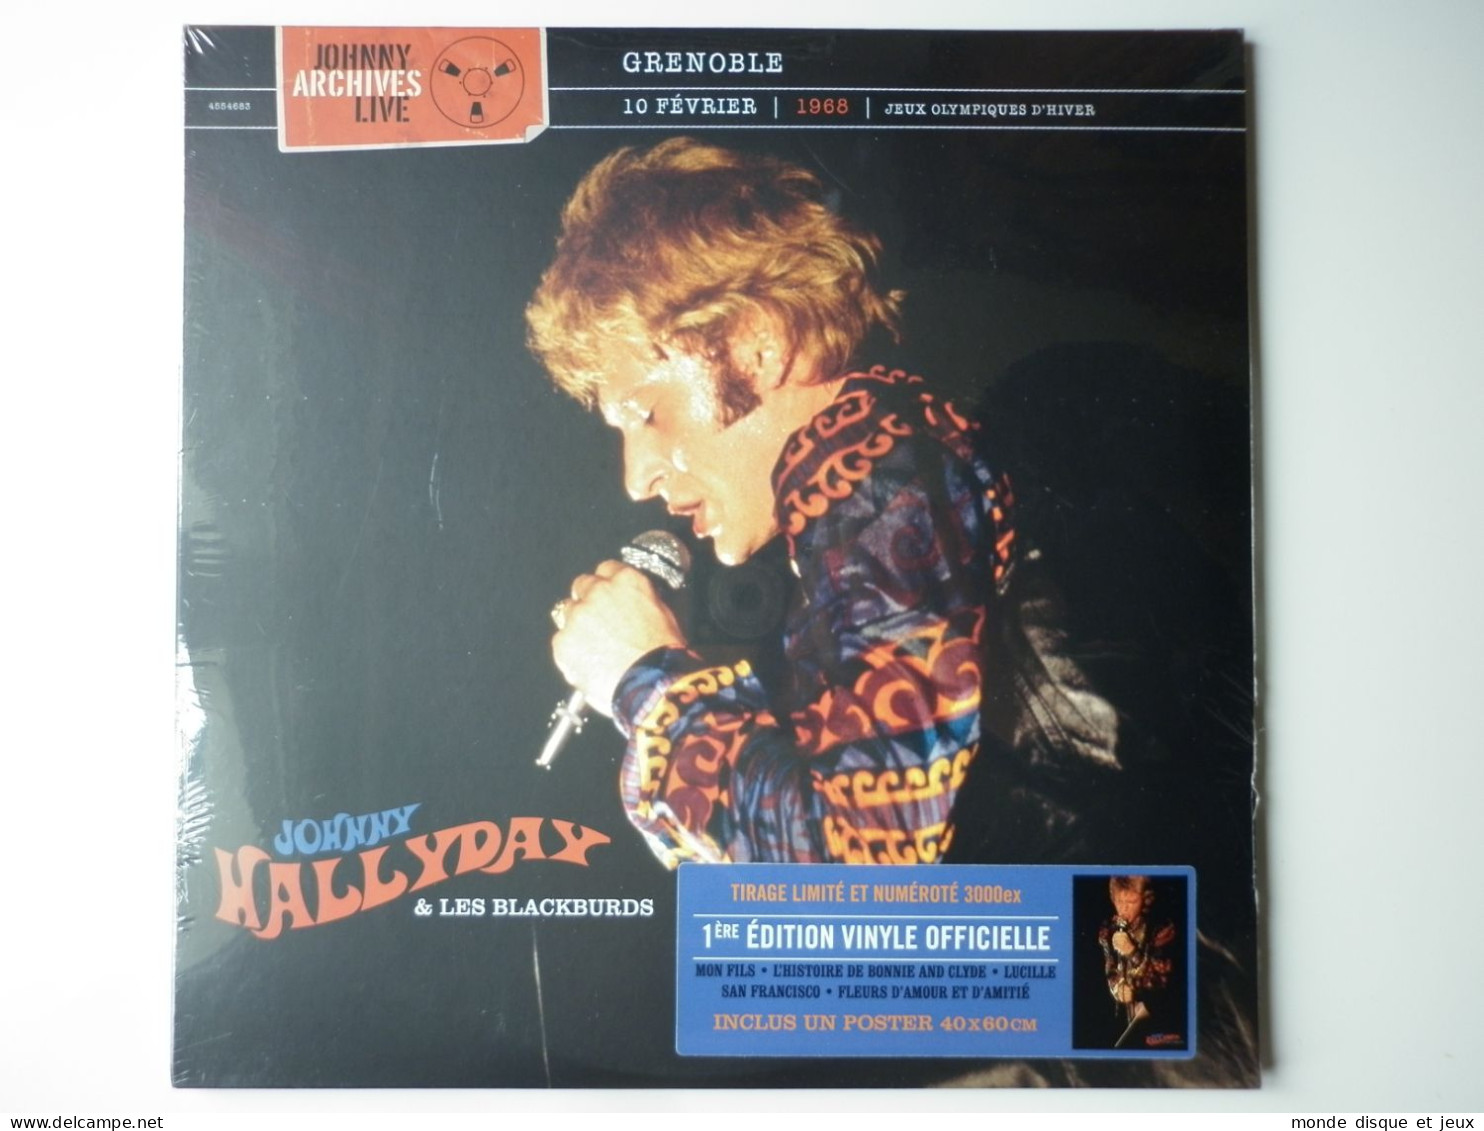 Johnny Hallyday Album Double 33Tours Vinyles Grenoble 10 Février 1968 - Autres - Musique Française